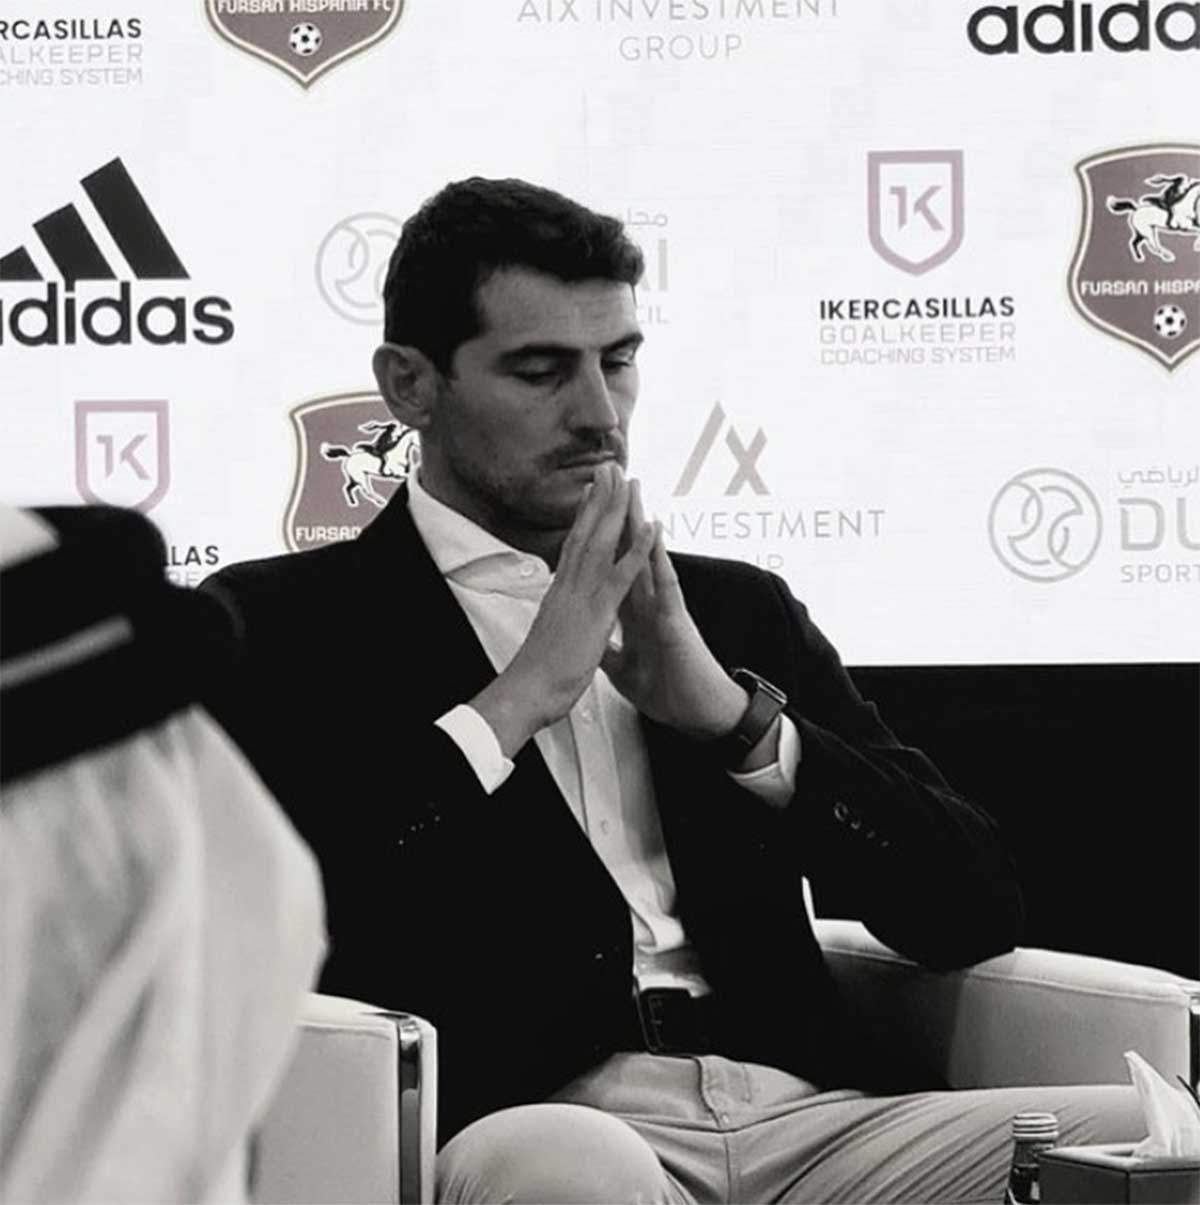 La nueva aventura profesional de Iker Casillas en Dubái que lo separa de su familia